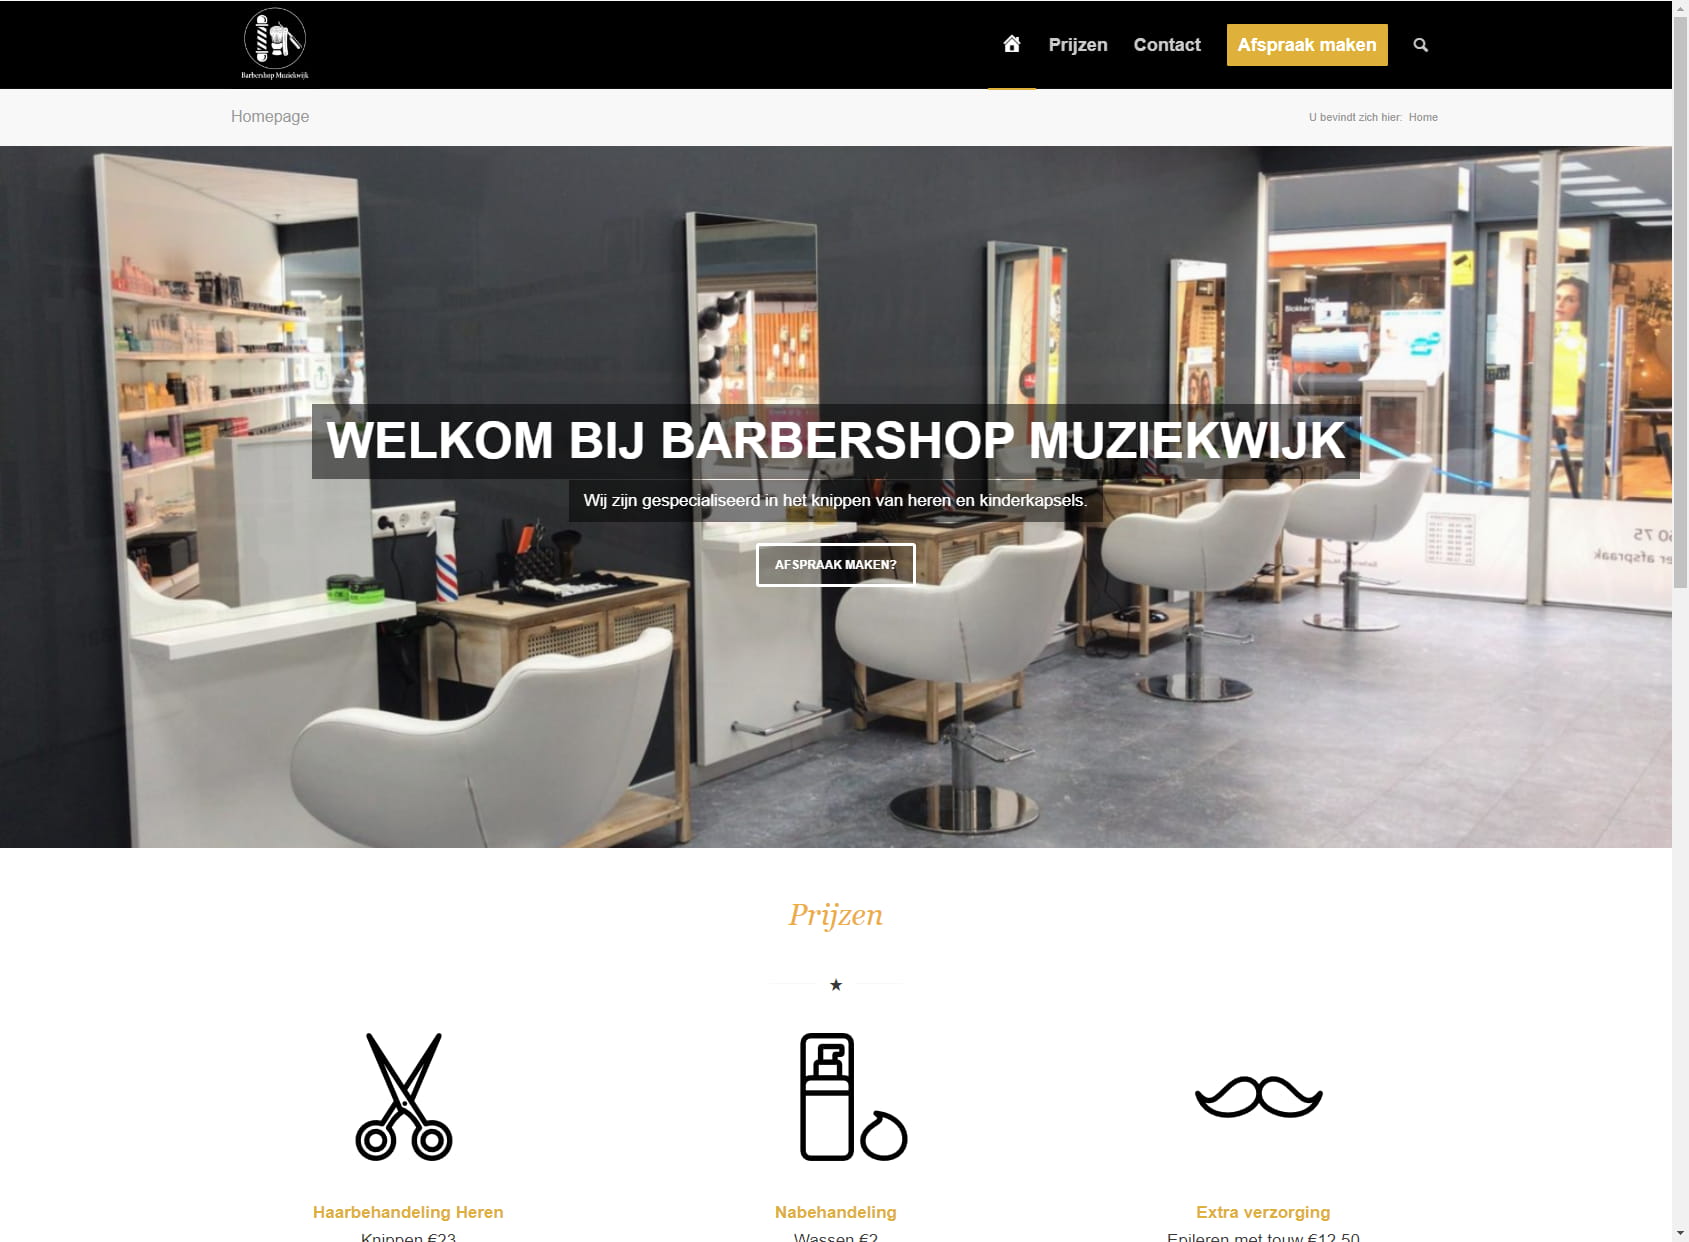 Barbershop Muziekwijk